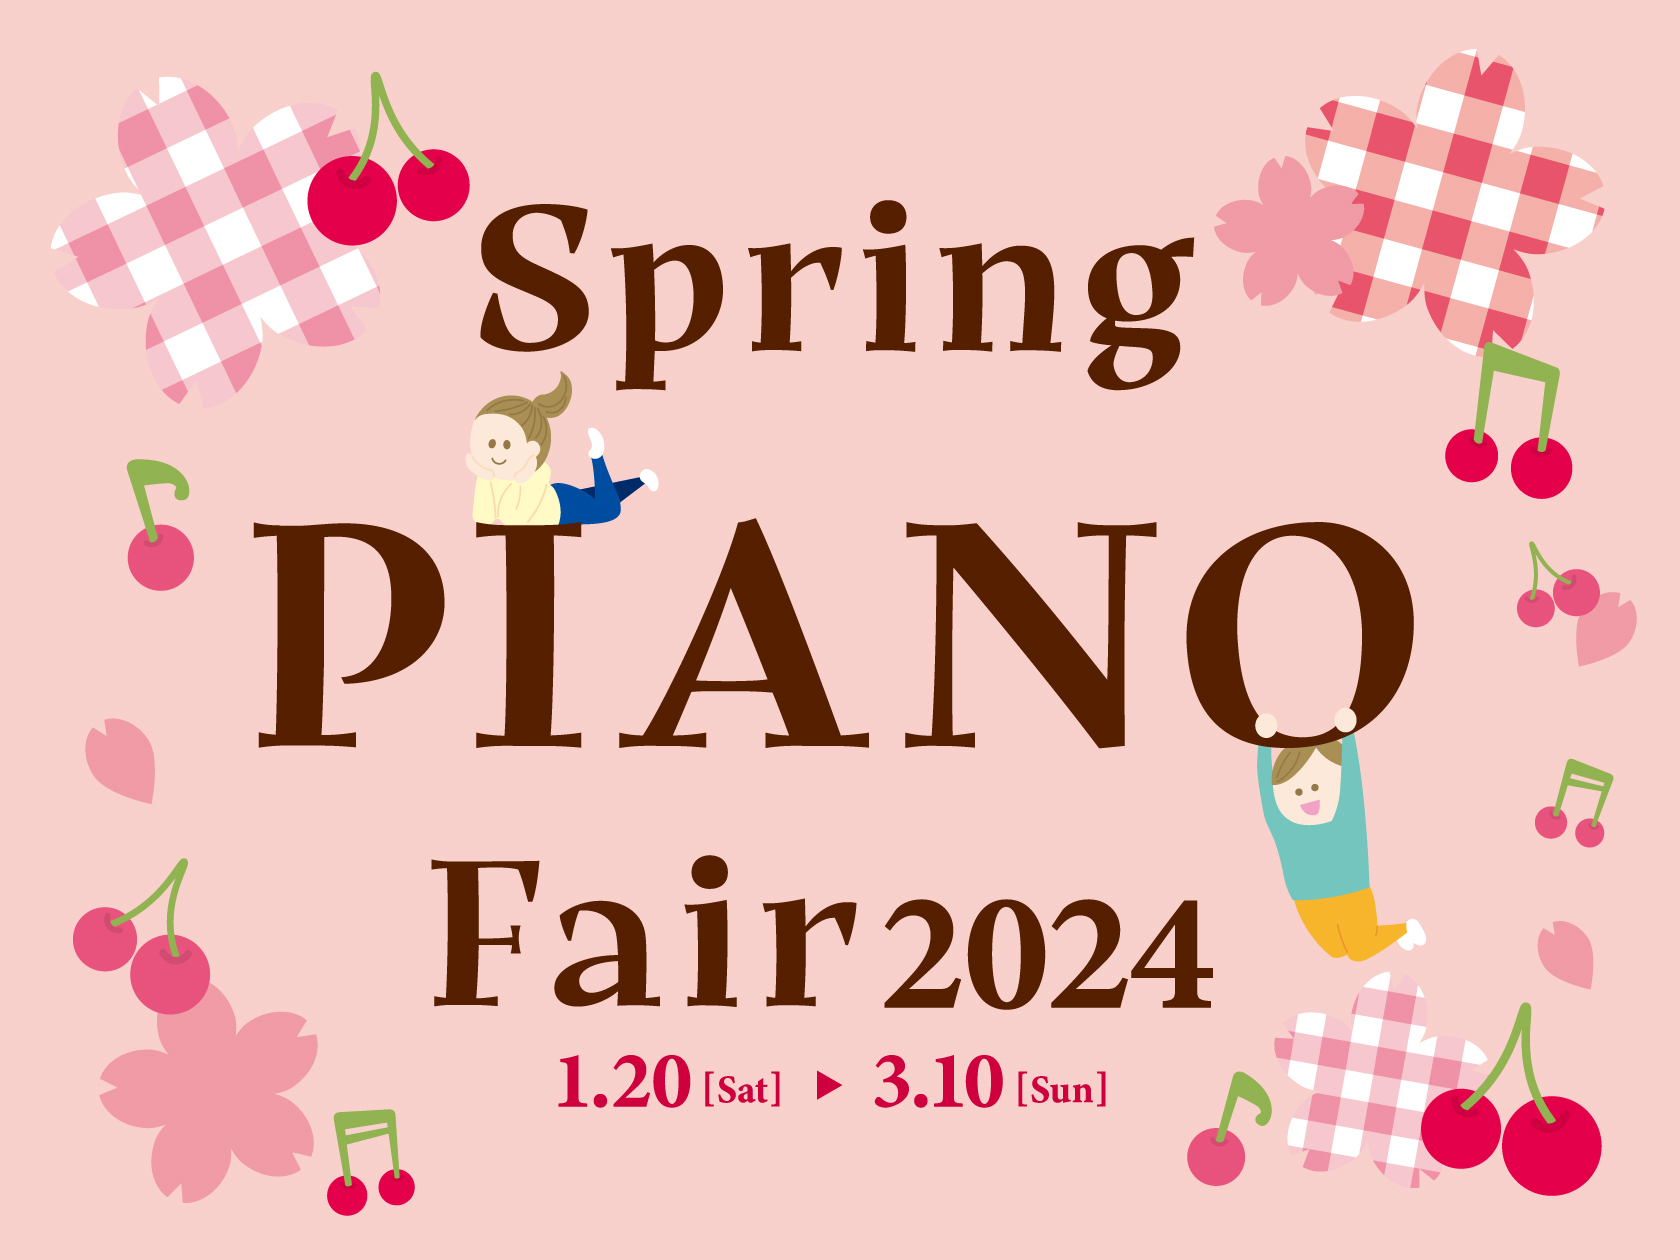 島村楽器では1月20日より全社キャンペーン「春のピアノフェア2024」を実施しています。お得なプレミアム品をご準備しておりますのでぜひこの機会にご来店ください！みなさまのご来店お待ちしております。 【ピアノ上級アドバイザー 紹介】 　 　　 CONTENTSお買い得情報展示品一覧電子ピアノ担当者オス […]